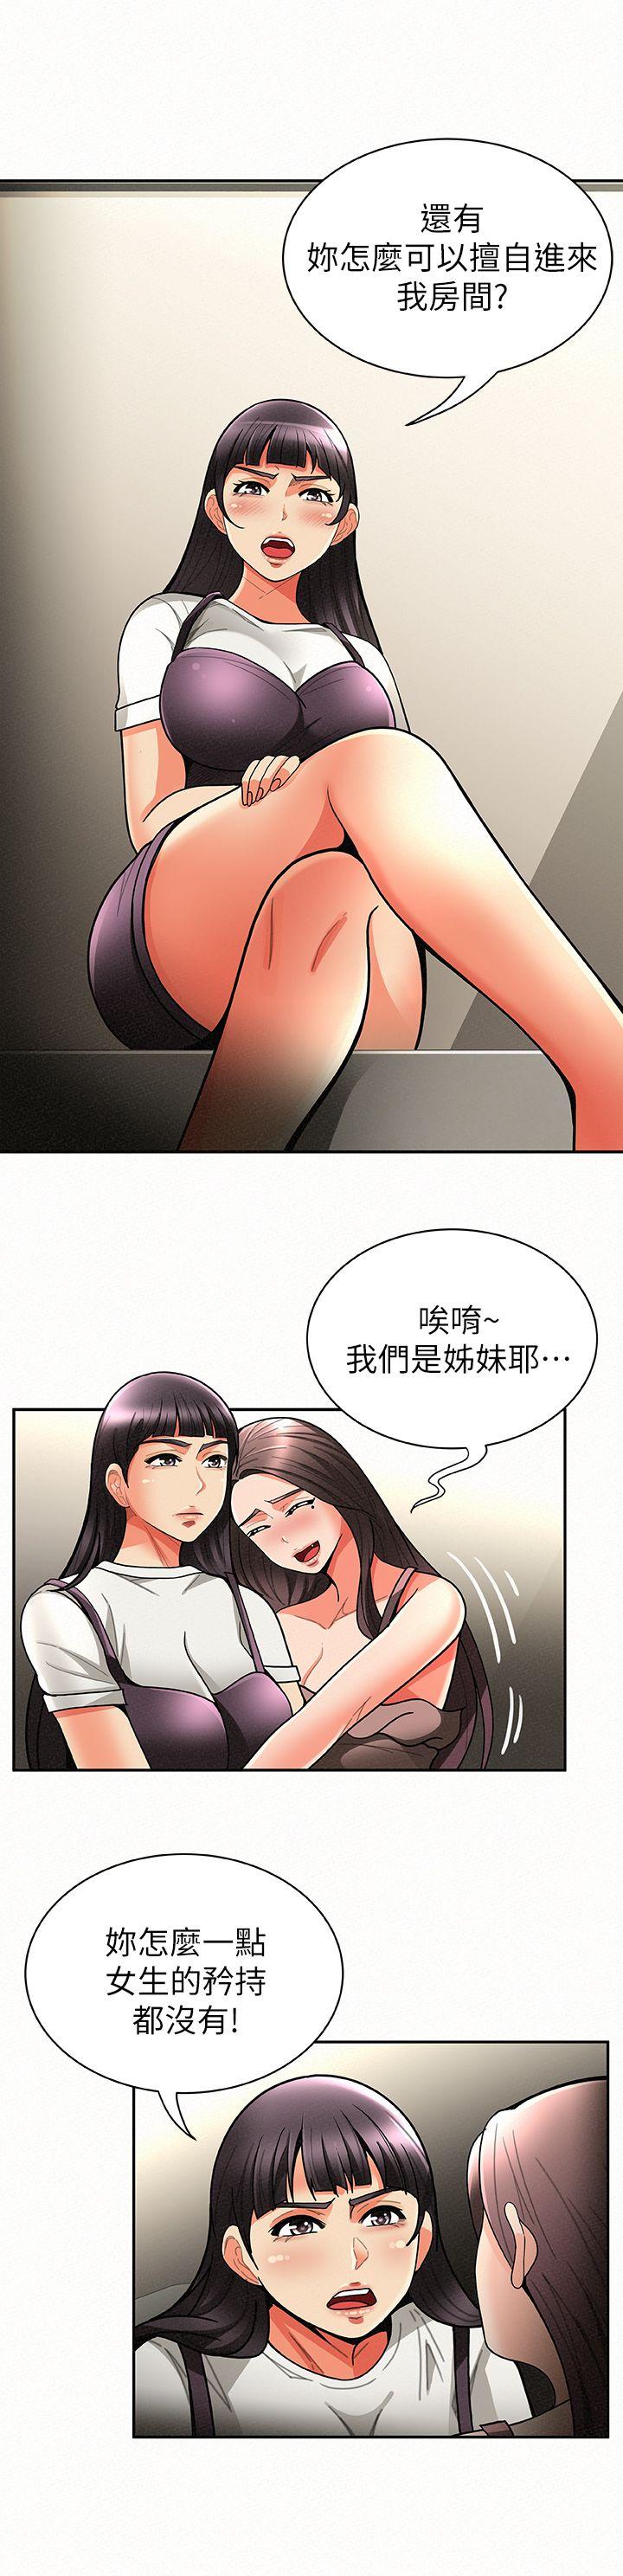 韩国污漫画 報告夫人 第7话-让姊姊也成为共犯 10